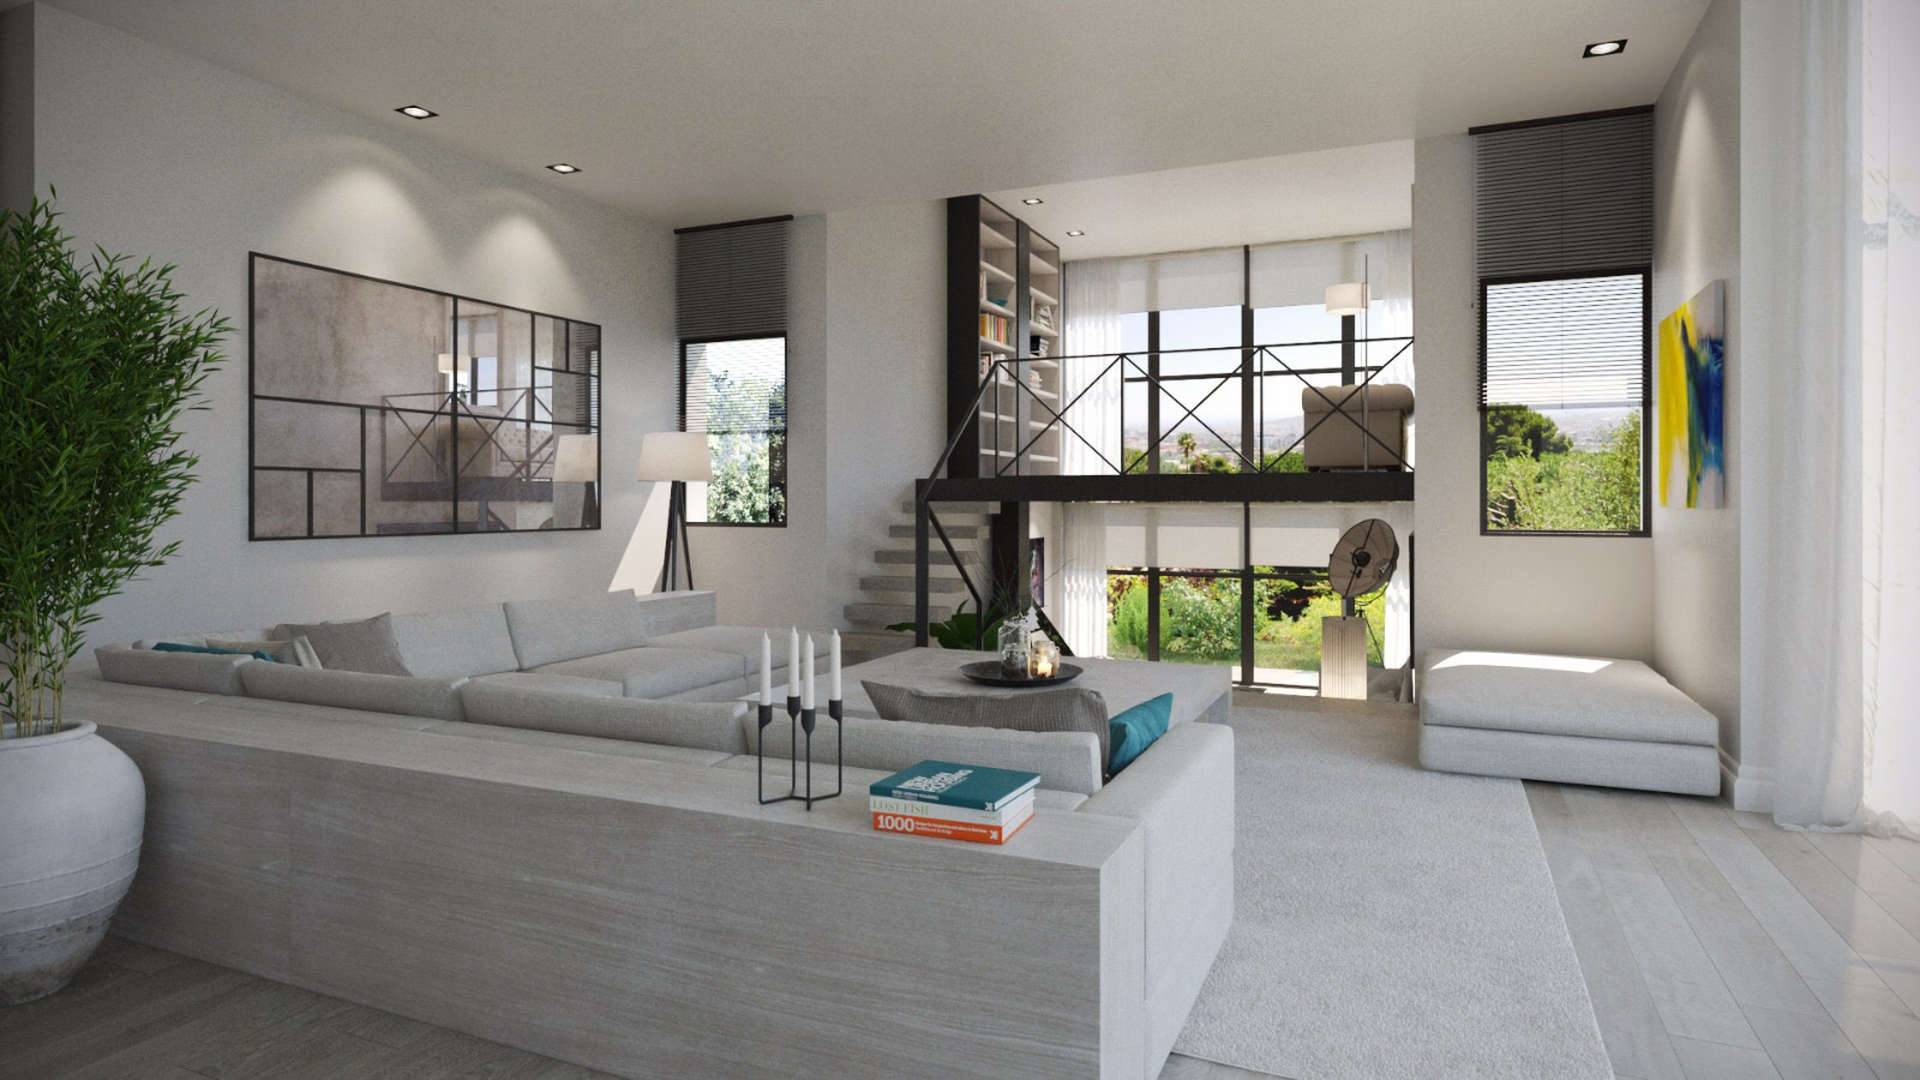 6 Bedroom Villa In Pedralbes, Barcelona, - Living Room , HD Wallpaper & Backgrounds